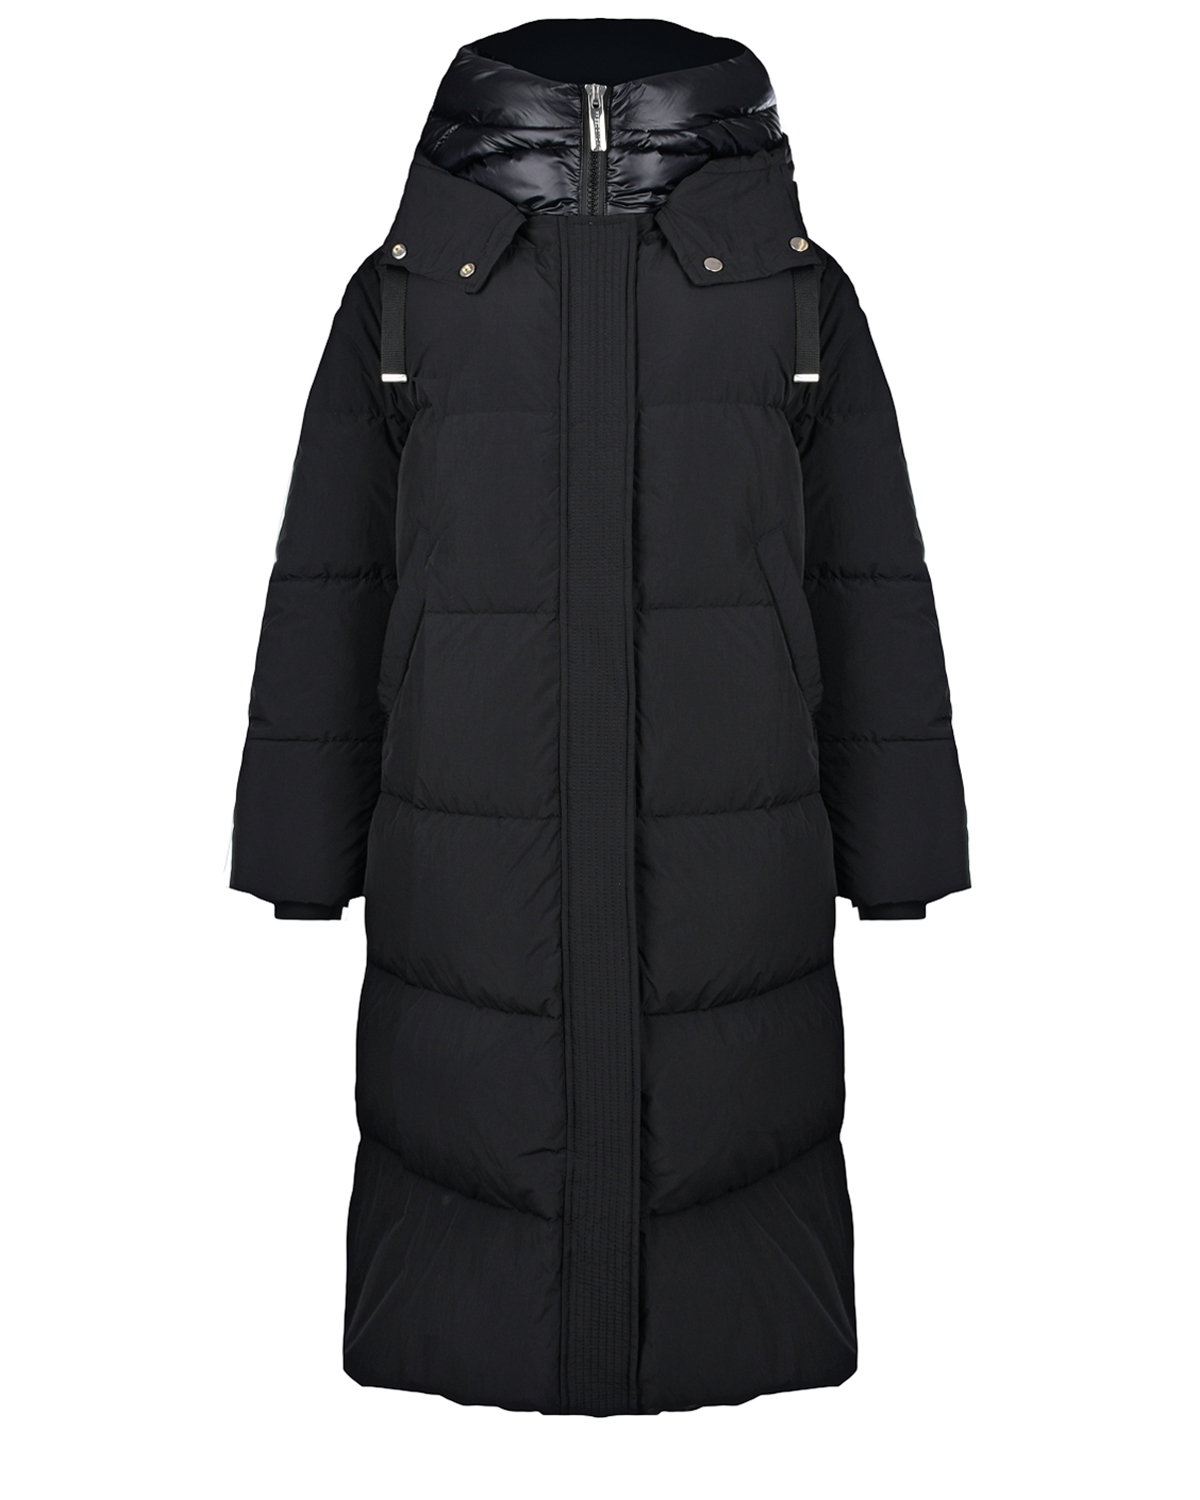 Черное стеганое пальто с капюшоном Freedomday, размер 42, цвет черный - фото 1